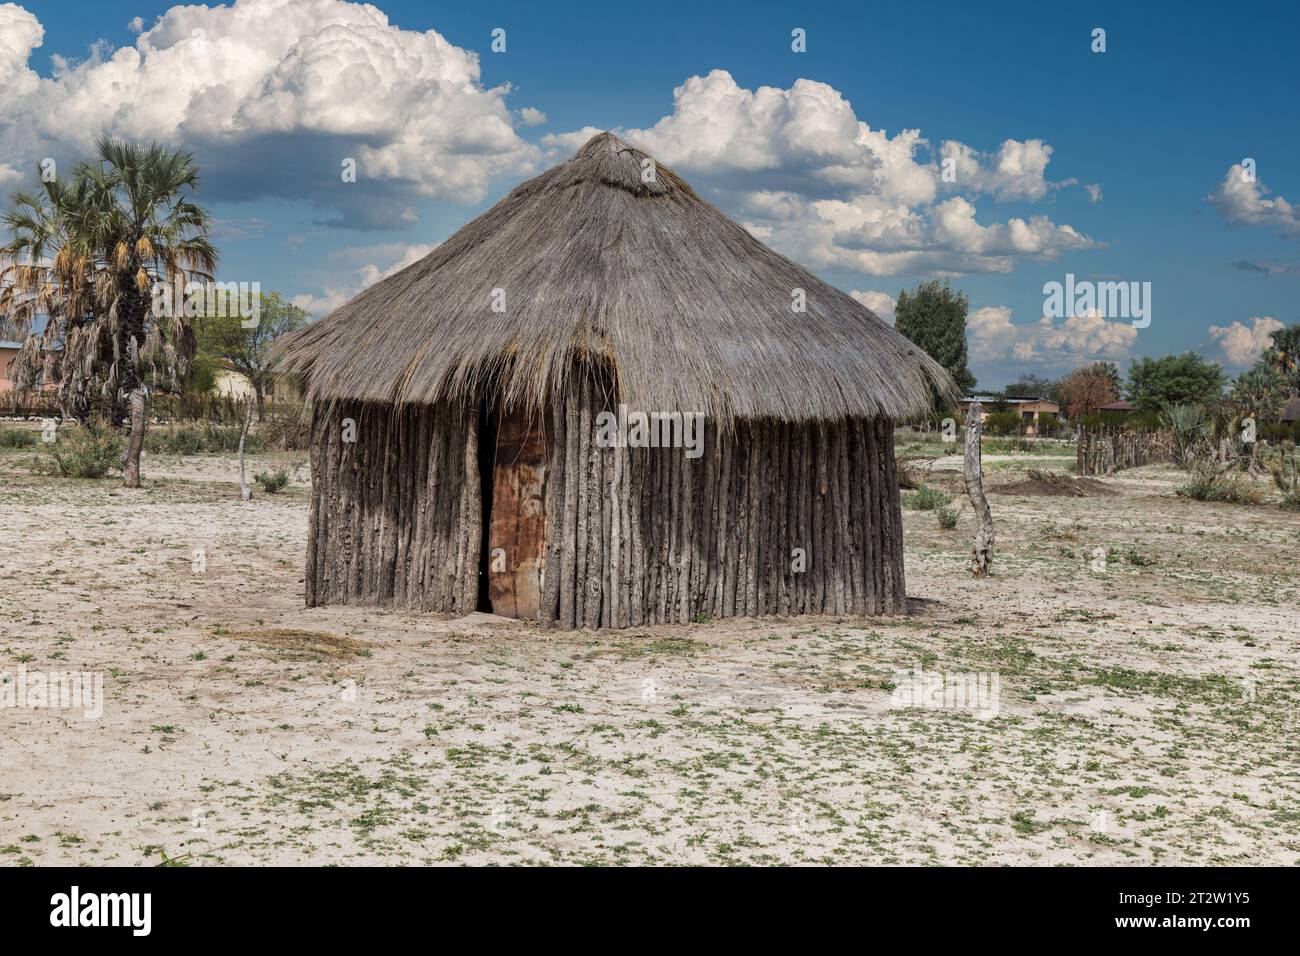 Villaggio del Botswana rondavel con pareti in legno e tetto di paglia tipico dell'africa meridionale Foto Stock